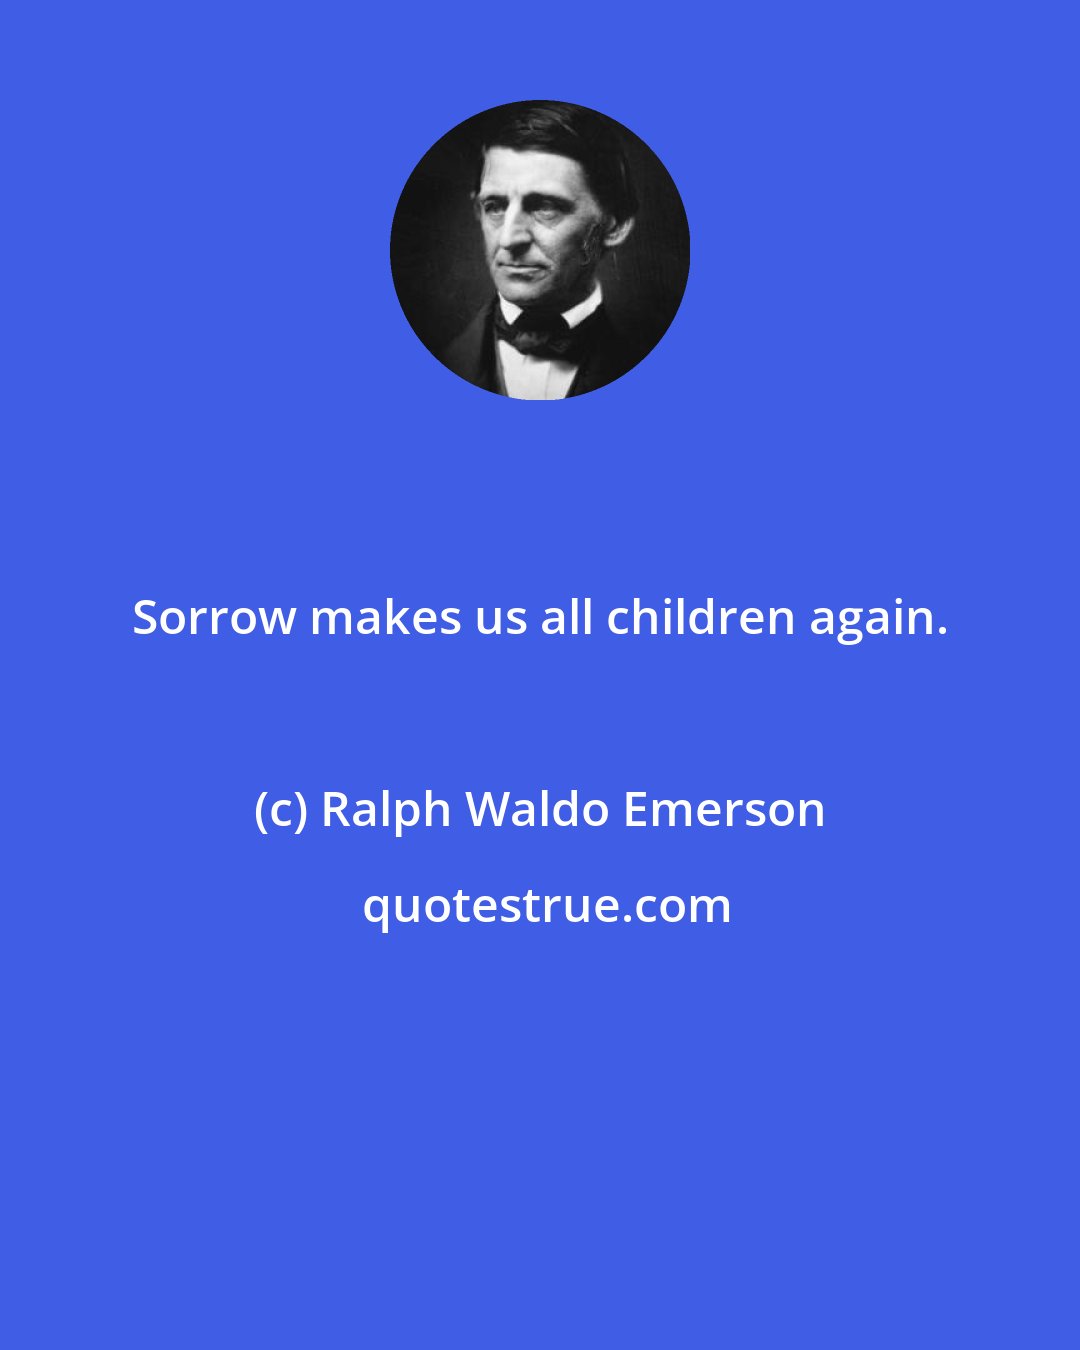 Ralph Waldo Emerson: Sorrow makes us all children again.